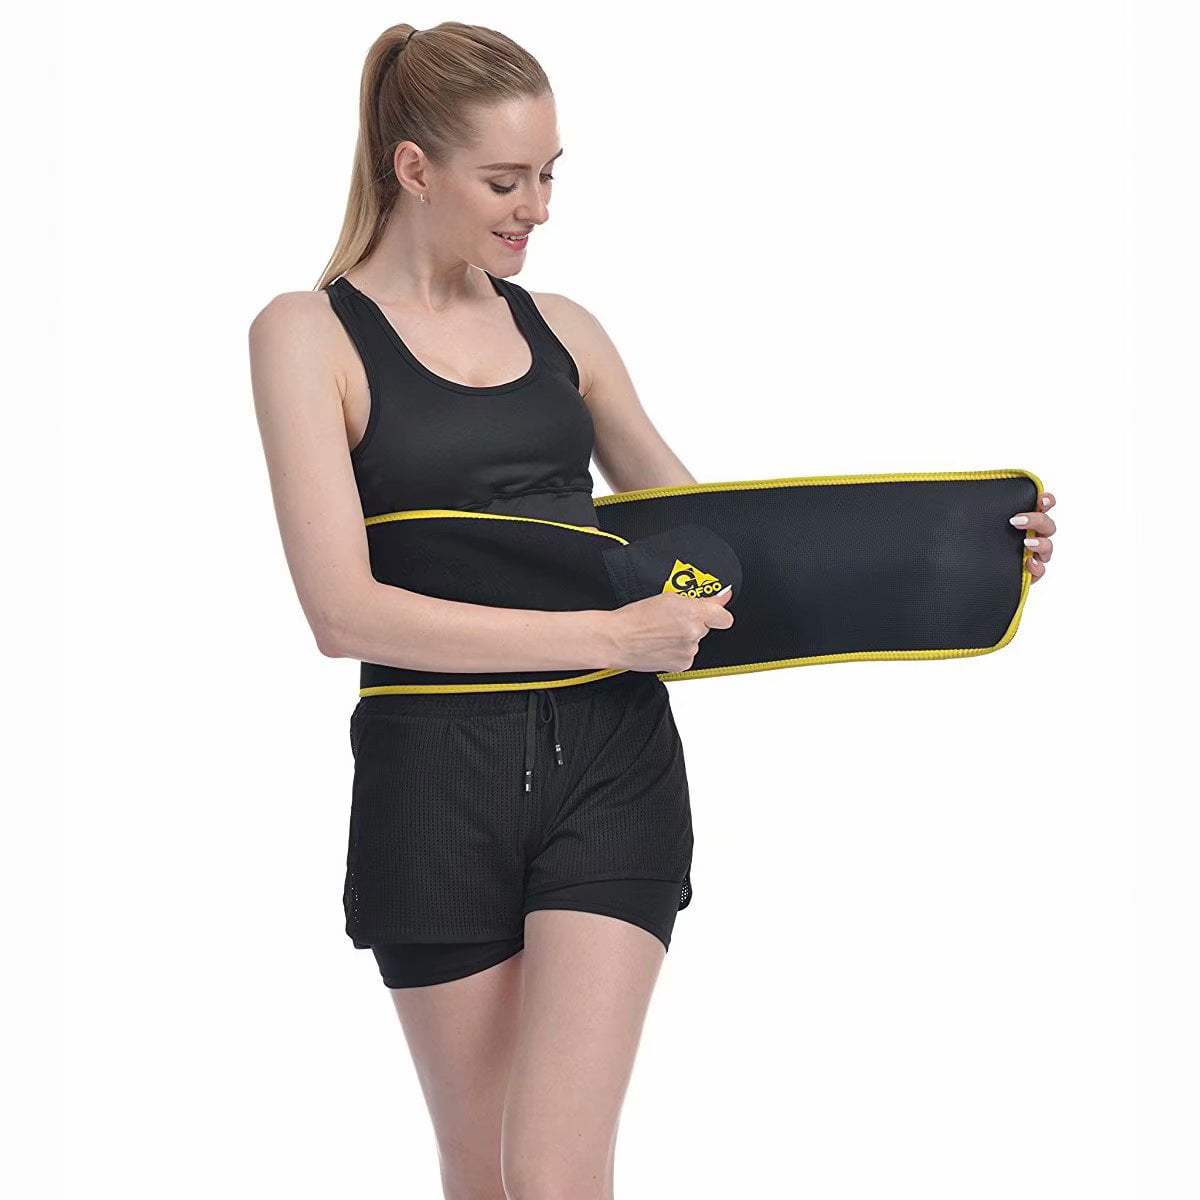 GROOFOO Waist Trimmer Belt Neoprene Waist Trainer for Women & Men Weight Loss